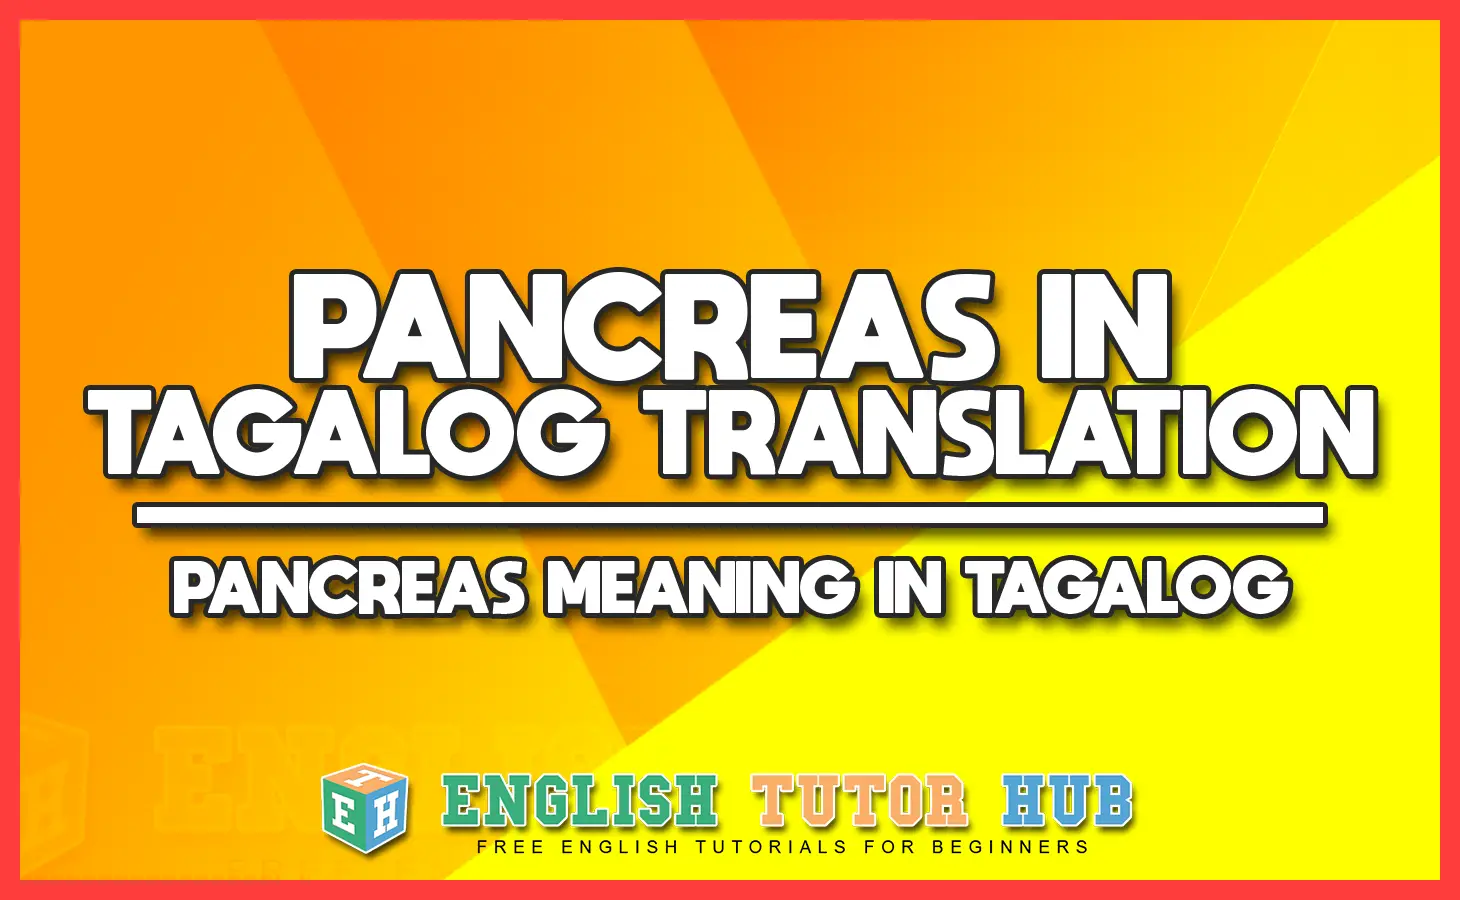 PANCREAS IN TAGALOG TRANSLATION